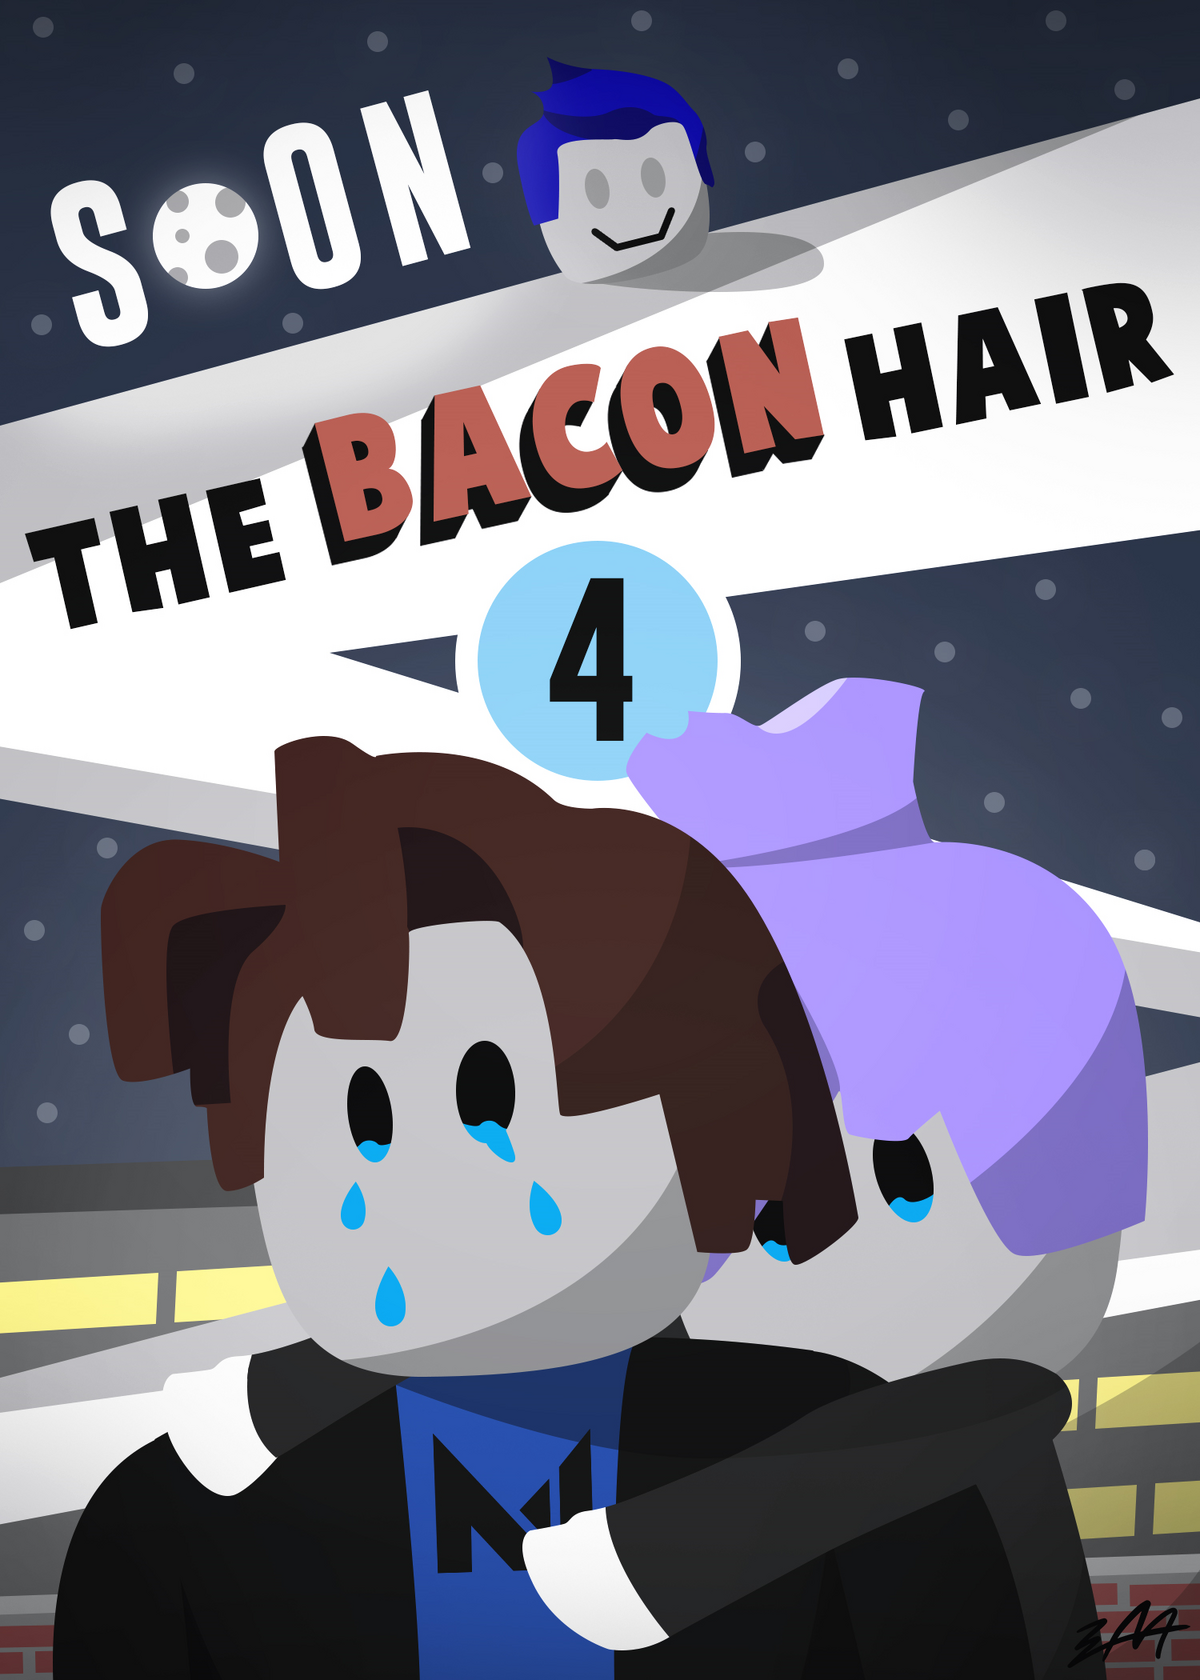 Bacon hair, Wiki